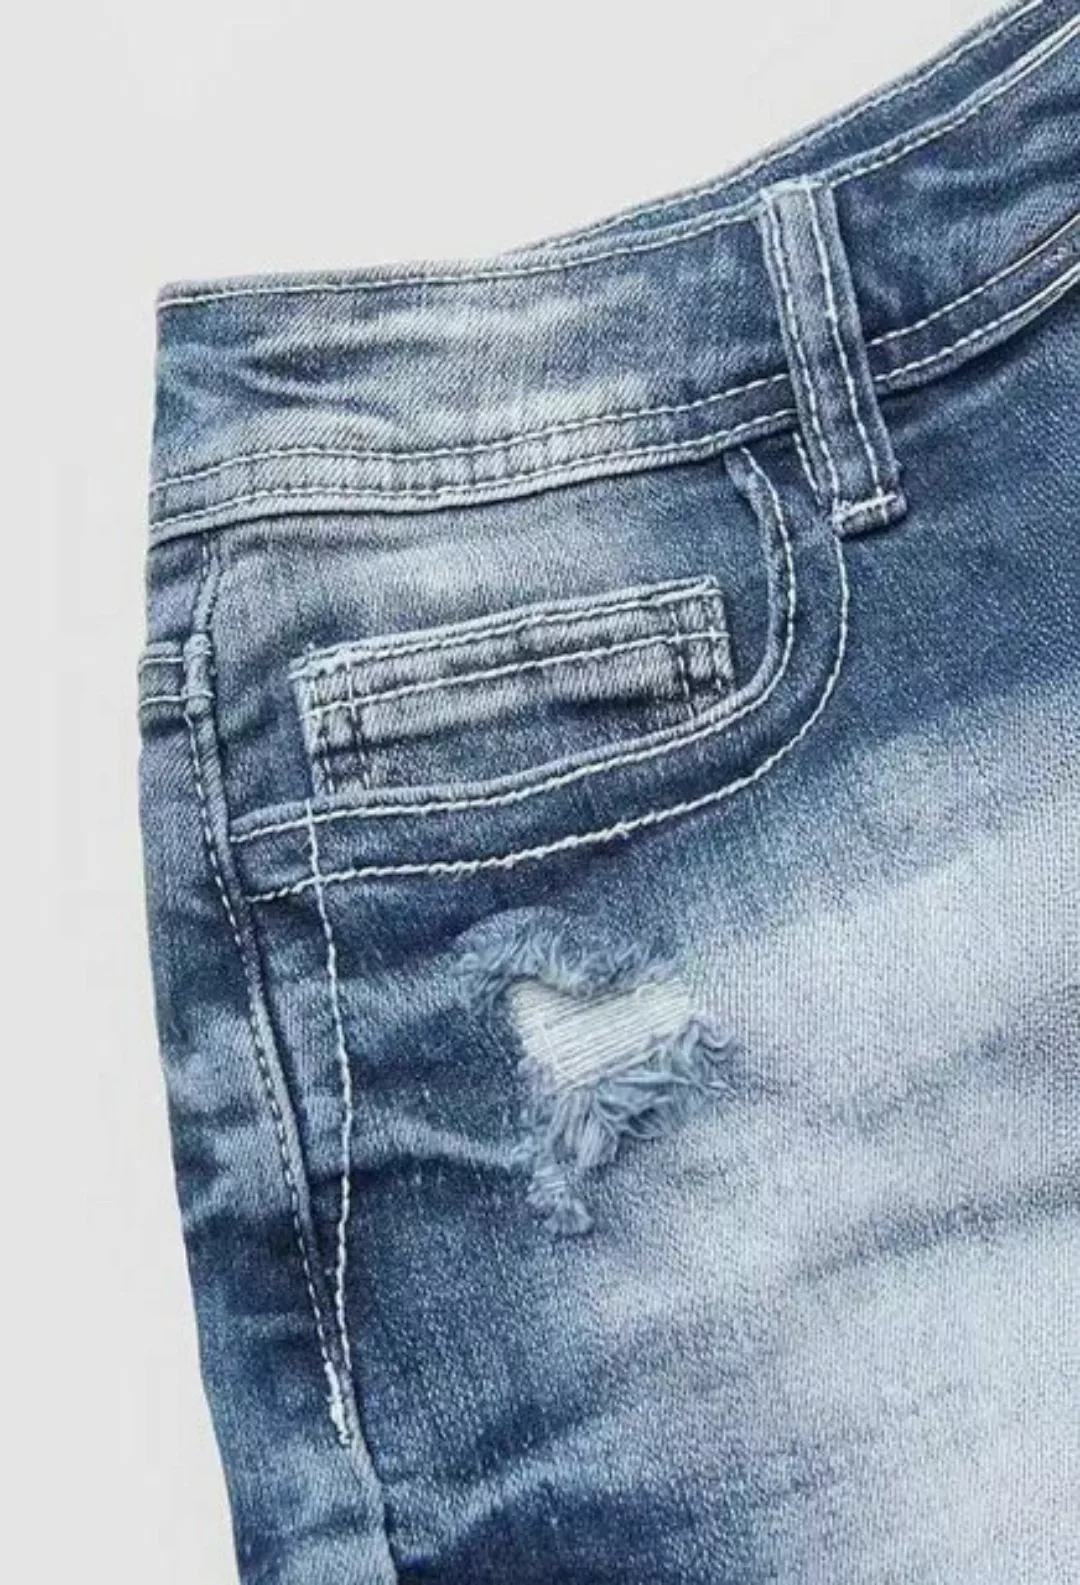 SEGUEN Jeansshorts Mode Stickerei Boden Seite Denim Shorts Frauen (Tasche K günstig online kaufen